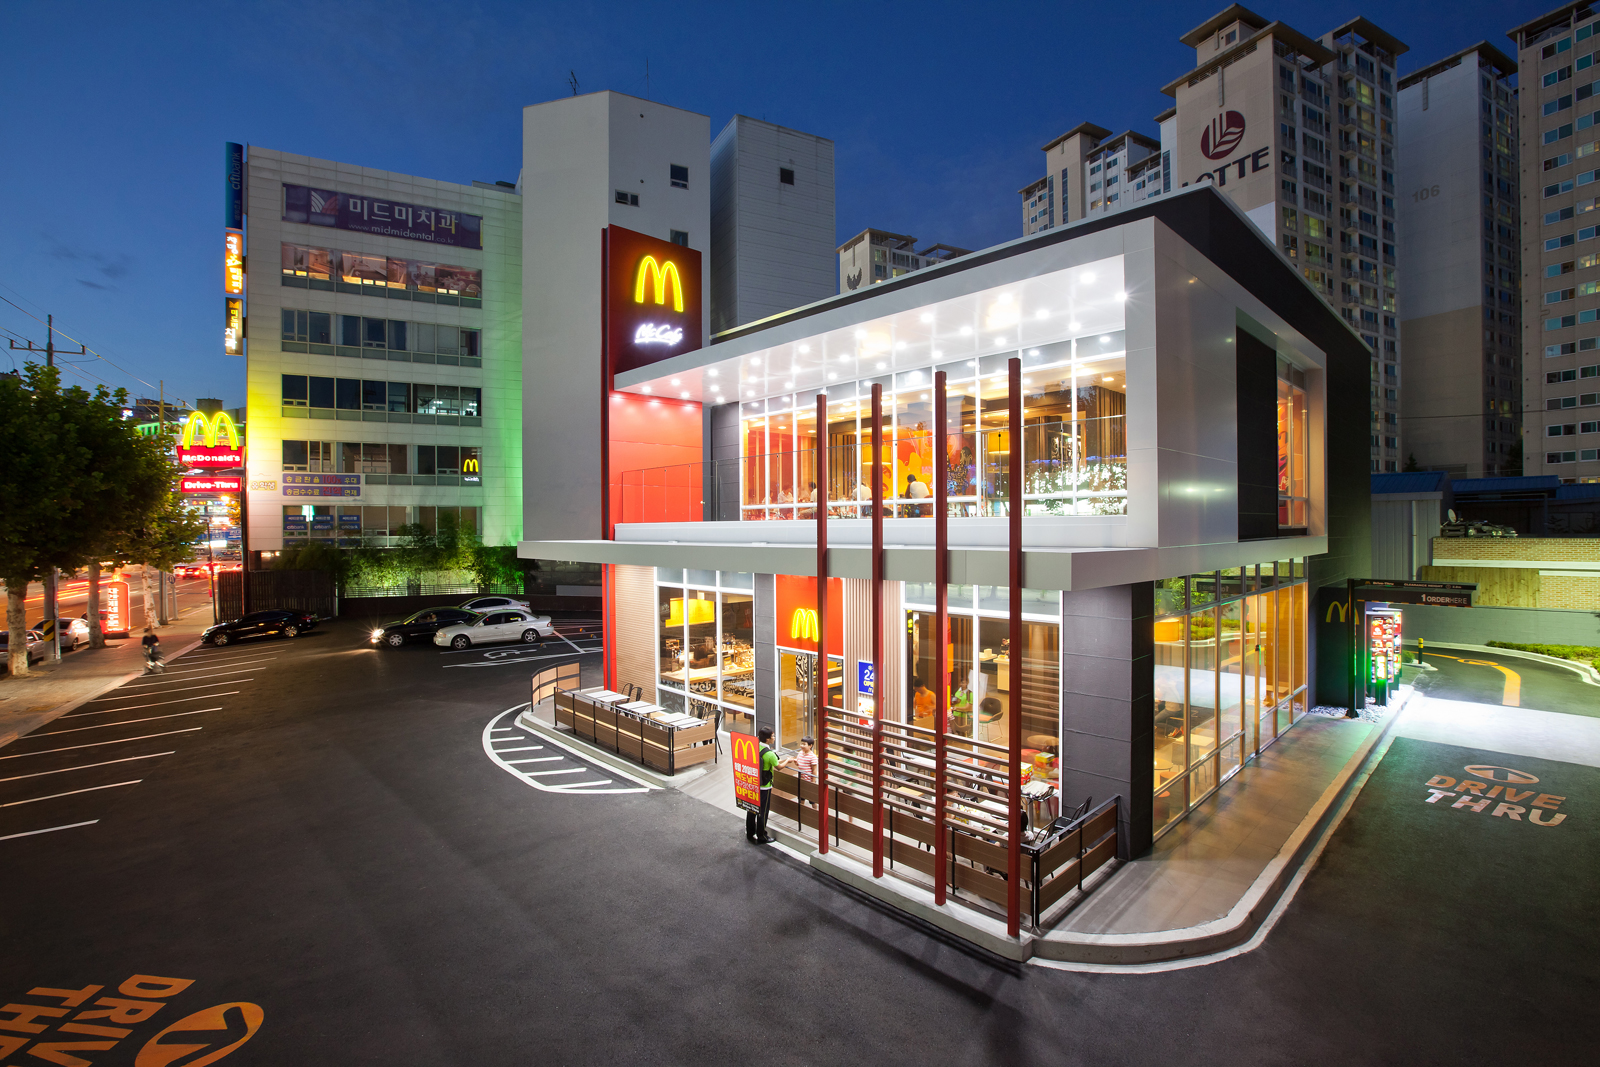 McDonalds Deagu Korea 